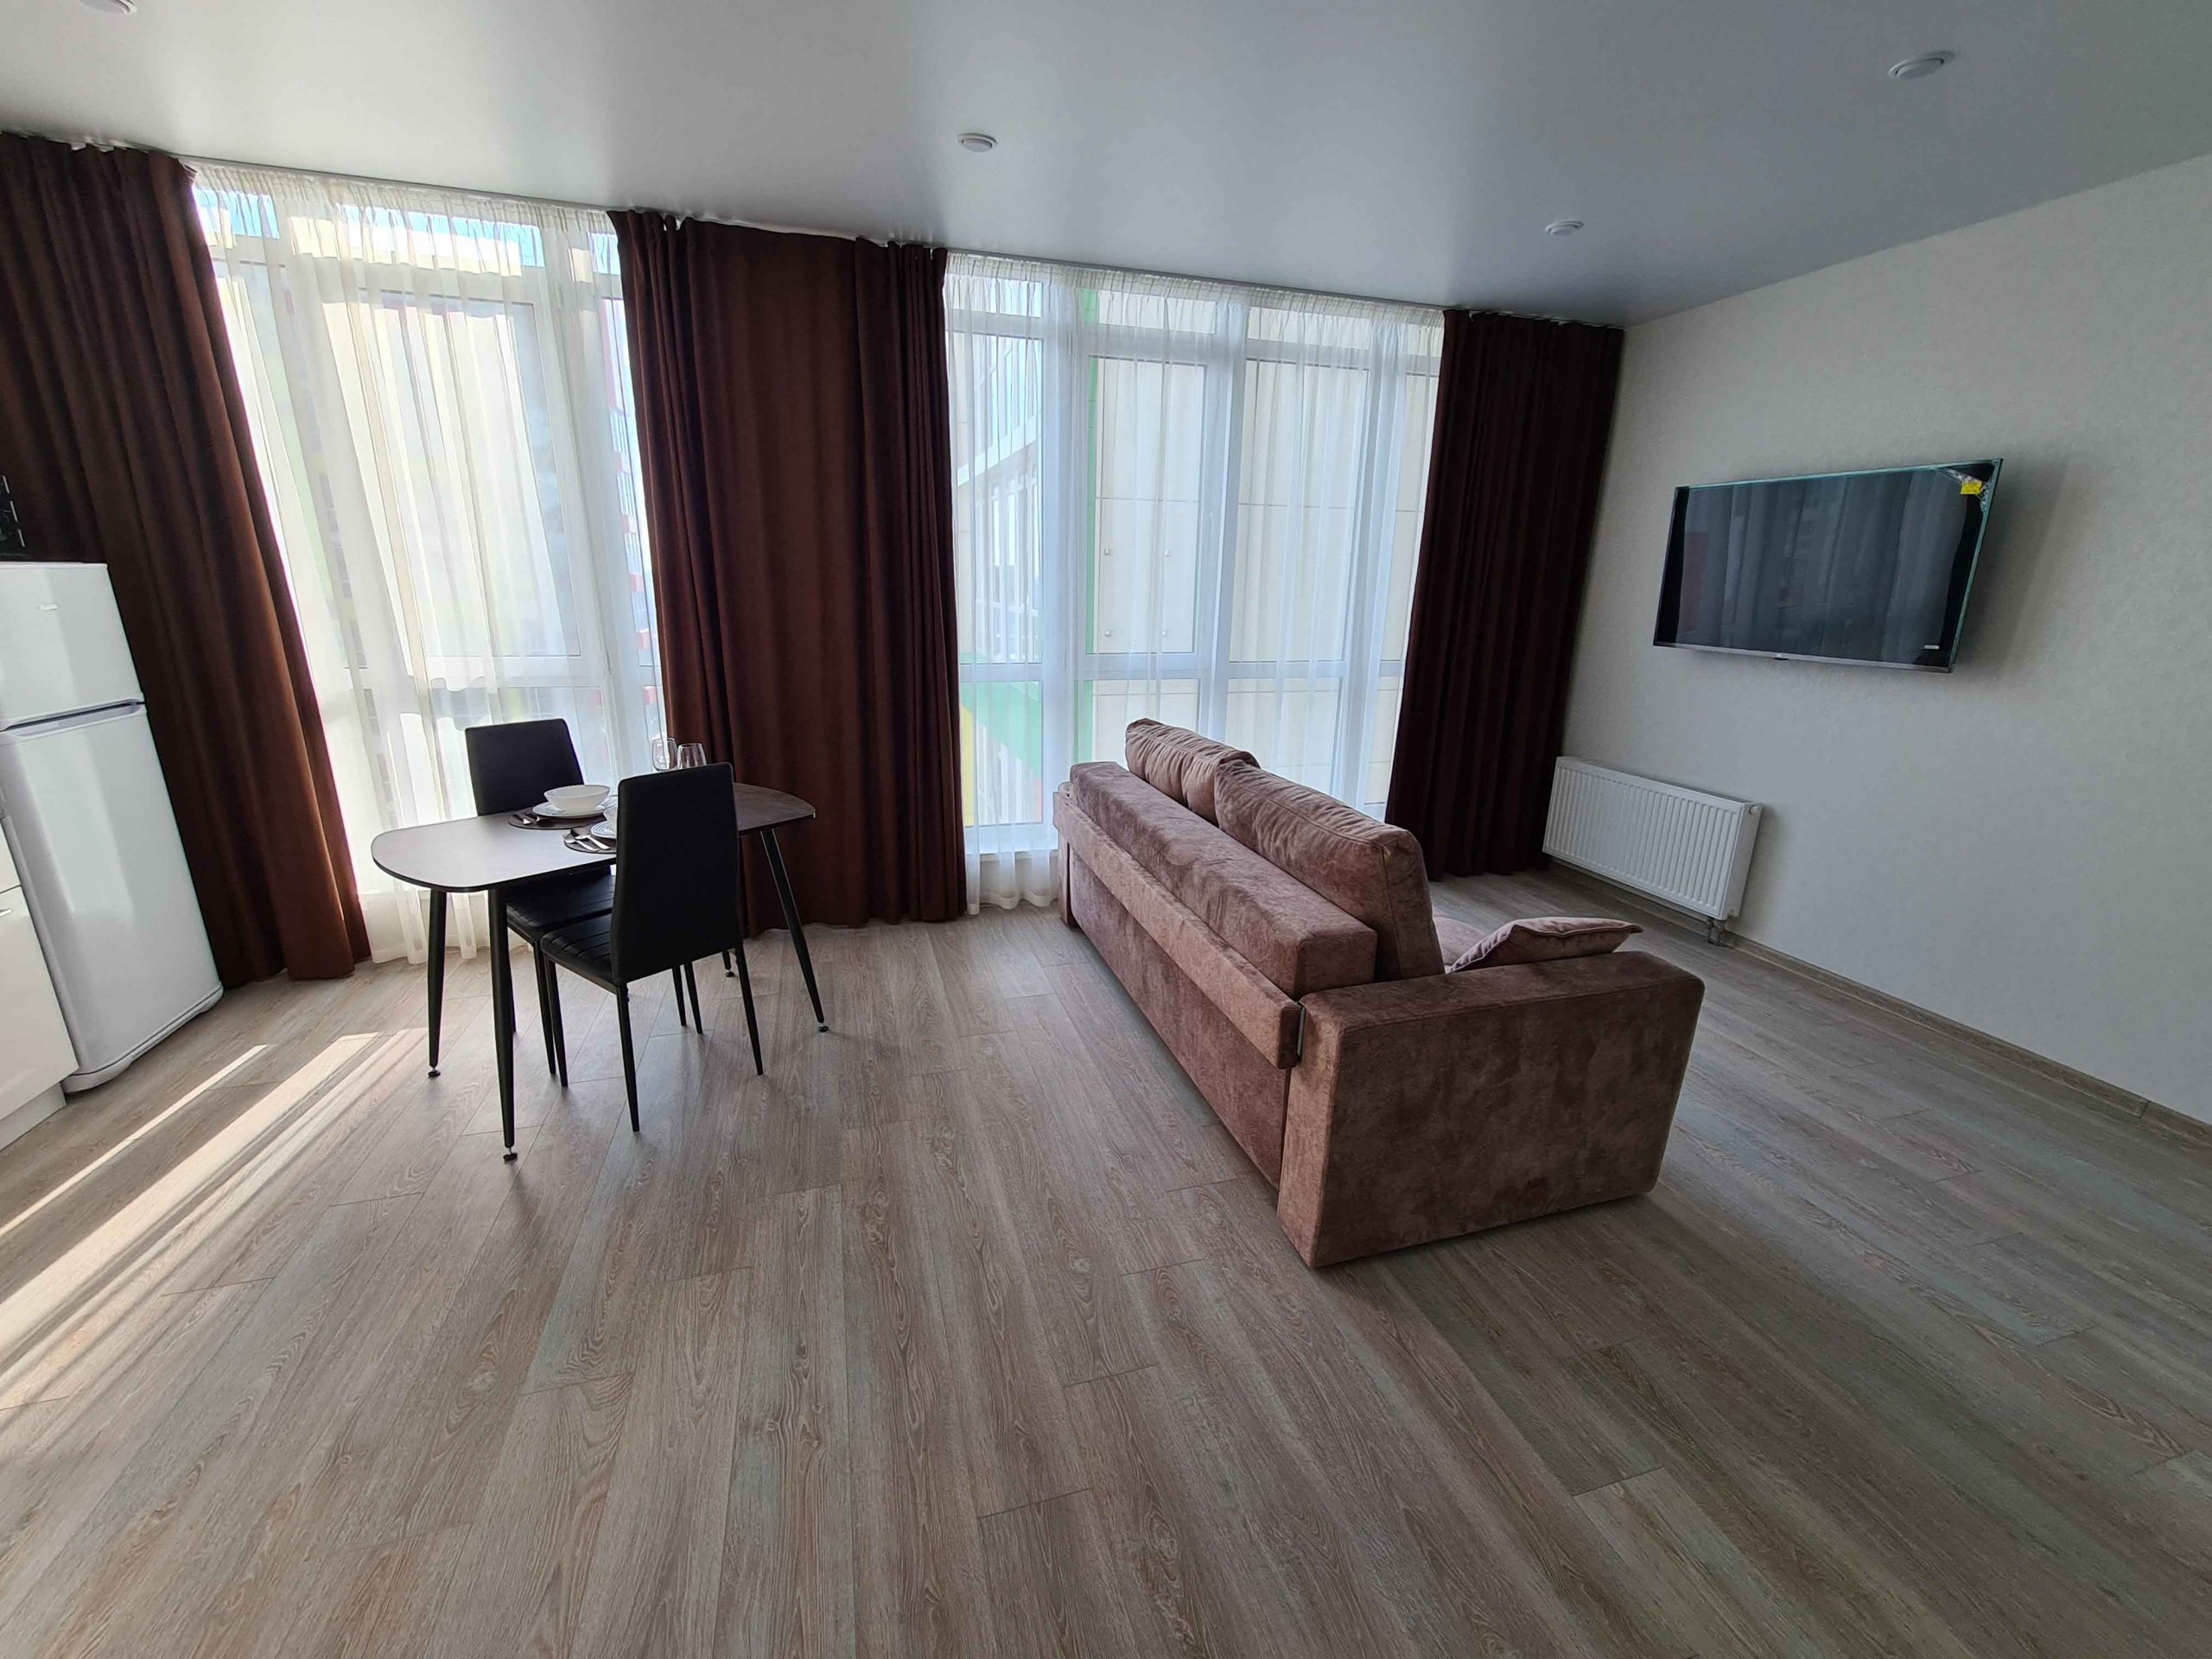 Однокомнатная квартира на ул. Пластунская, 123а,к1 (37кв.м)до 4 гостей